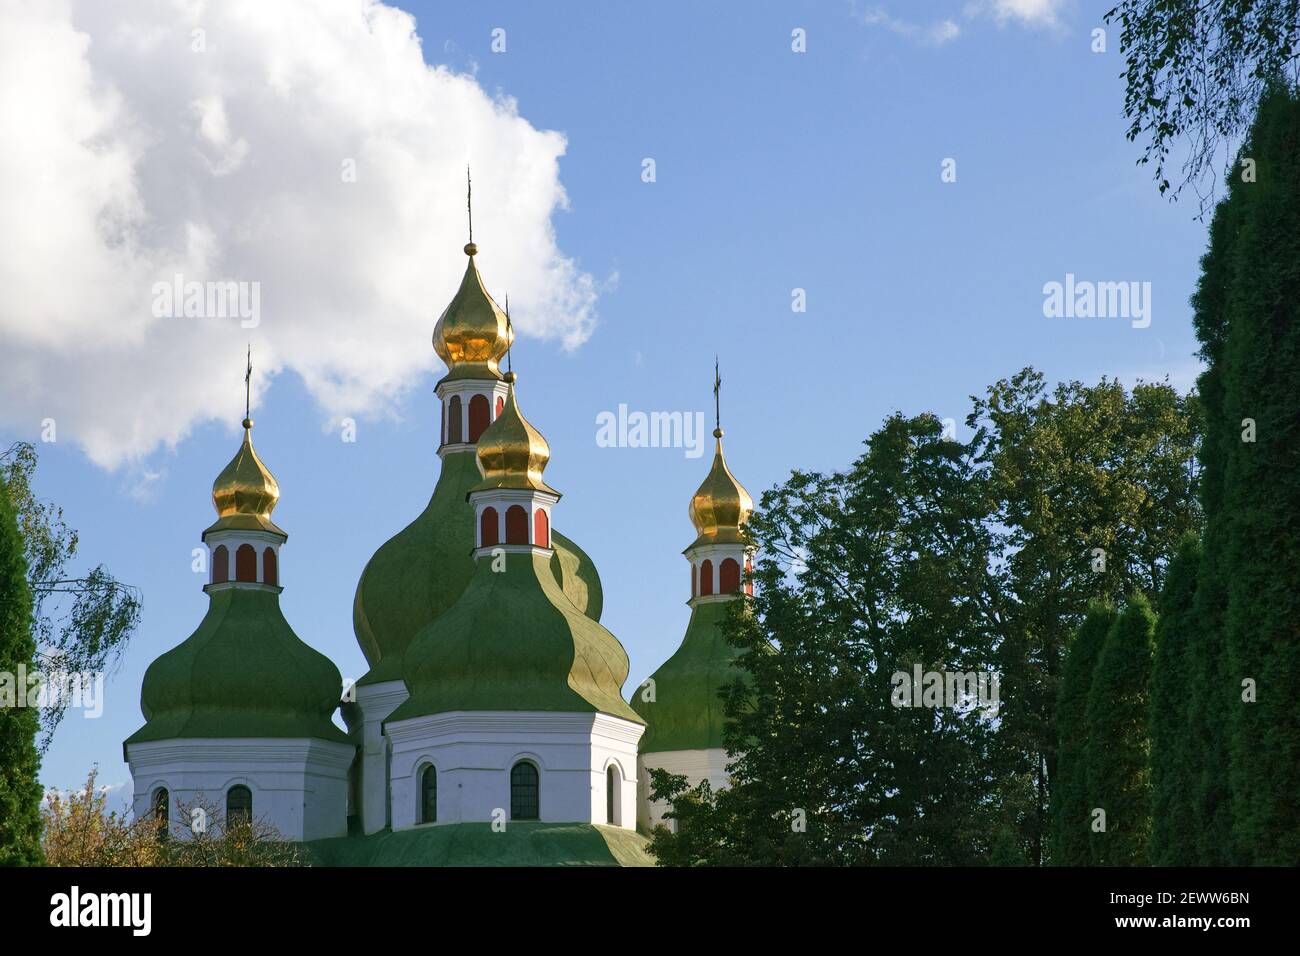 Kuppeln einer orthodoxen Kirche gegen den Himmel. Orthodoxe Barockarchitektur. Der Himmel ist klar. Ein altes religiöses Gebäude. Stockfoto